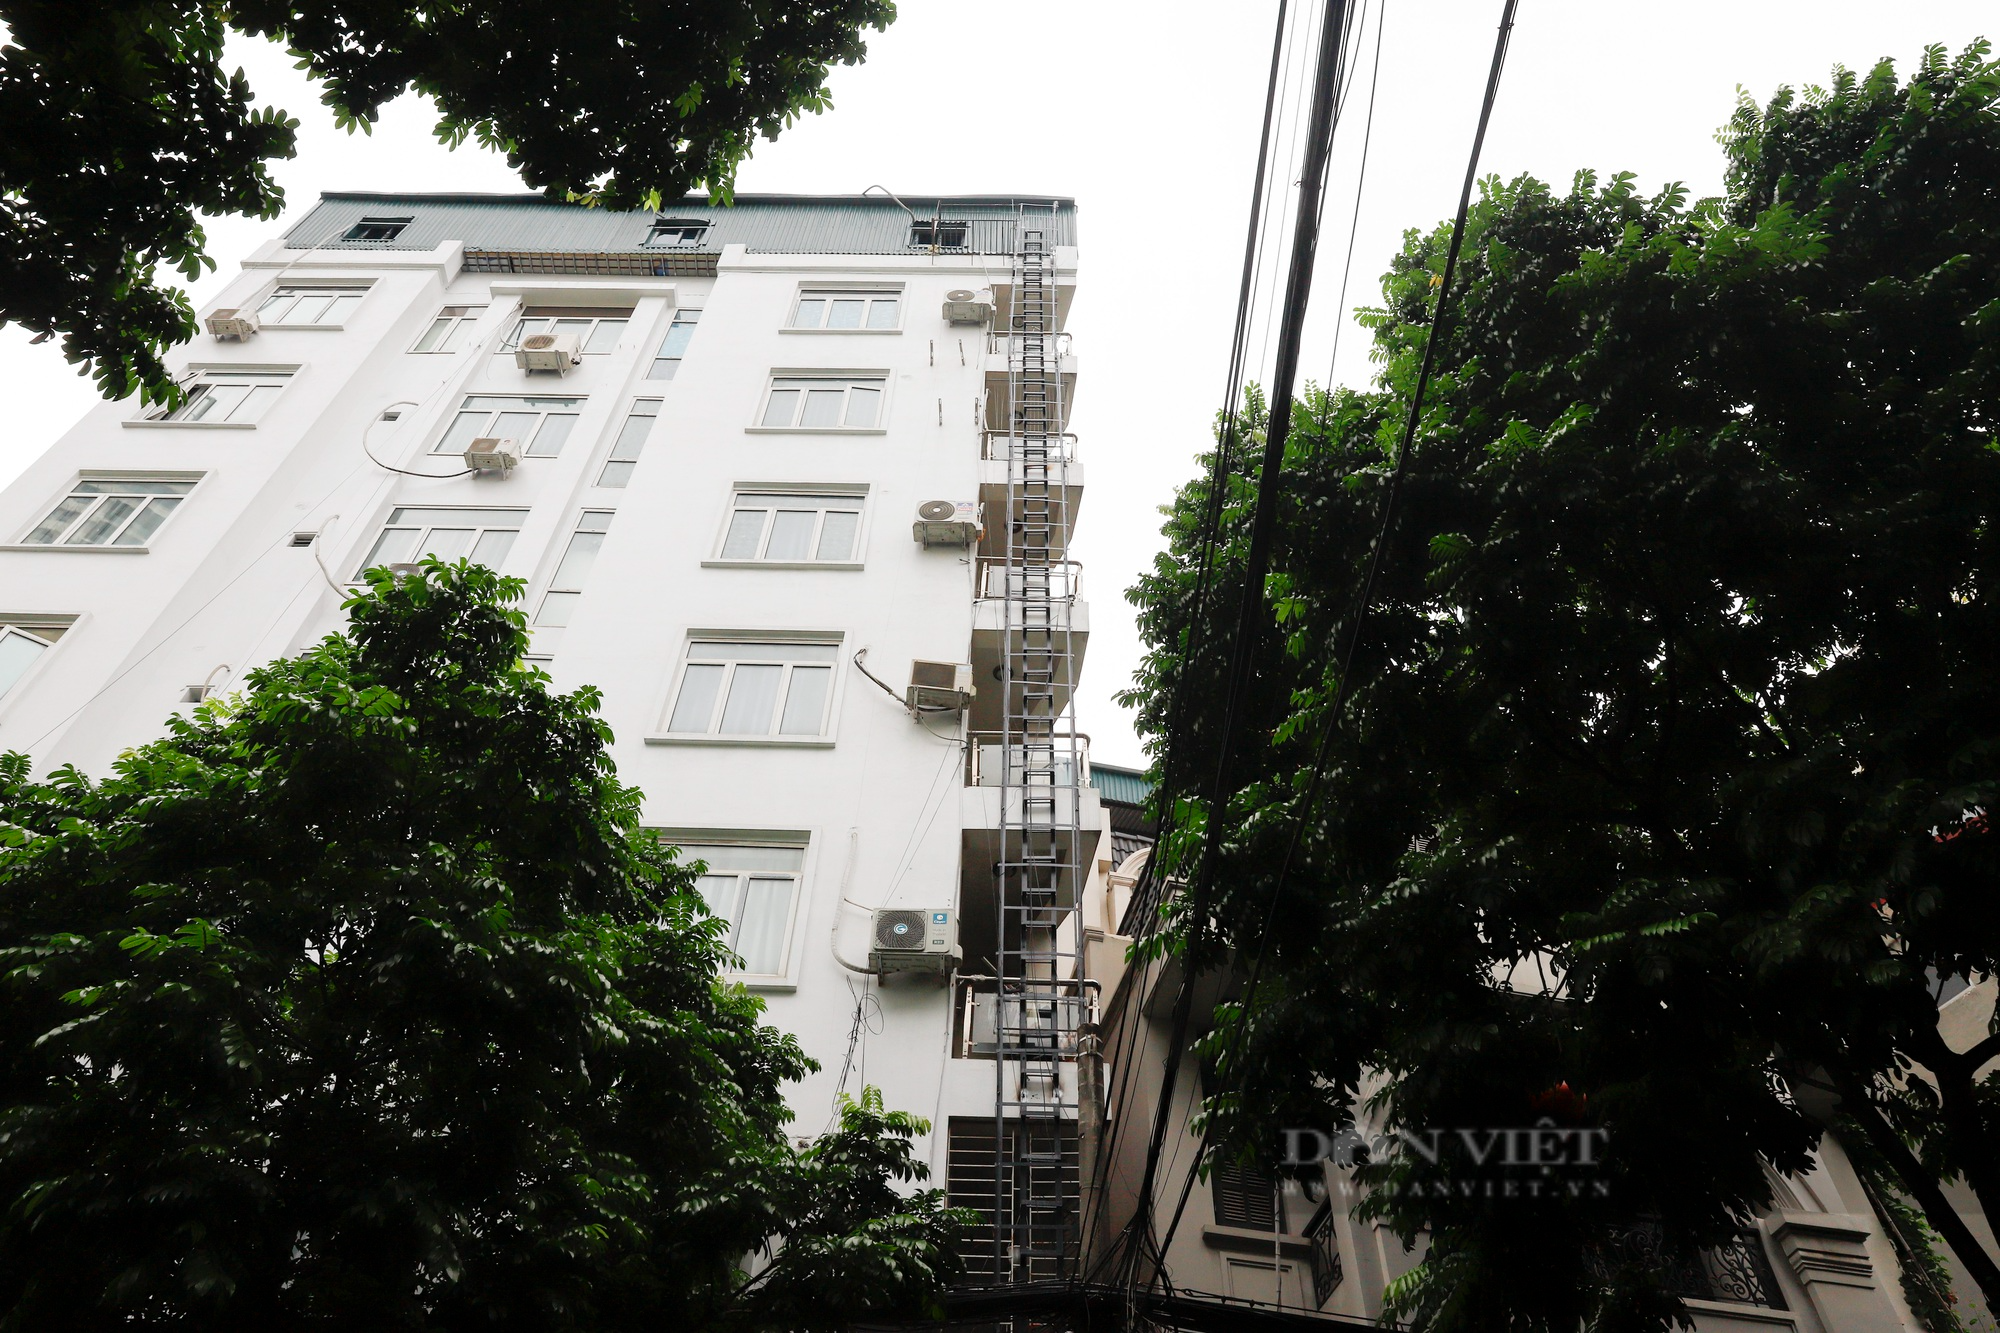 Chung cư mini, khách sạn tại Hà Nội lắp thang thoát hiểm hàng trăm triệu đồng - Ảnh 5.